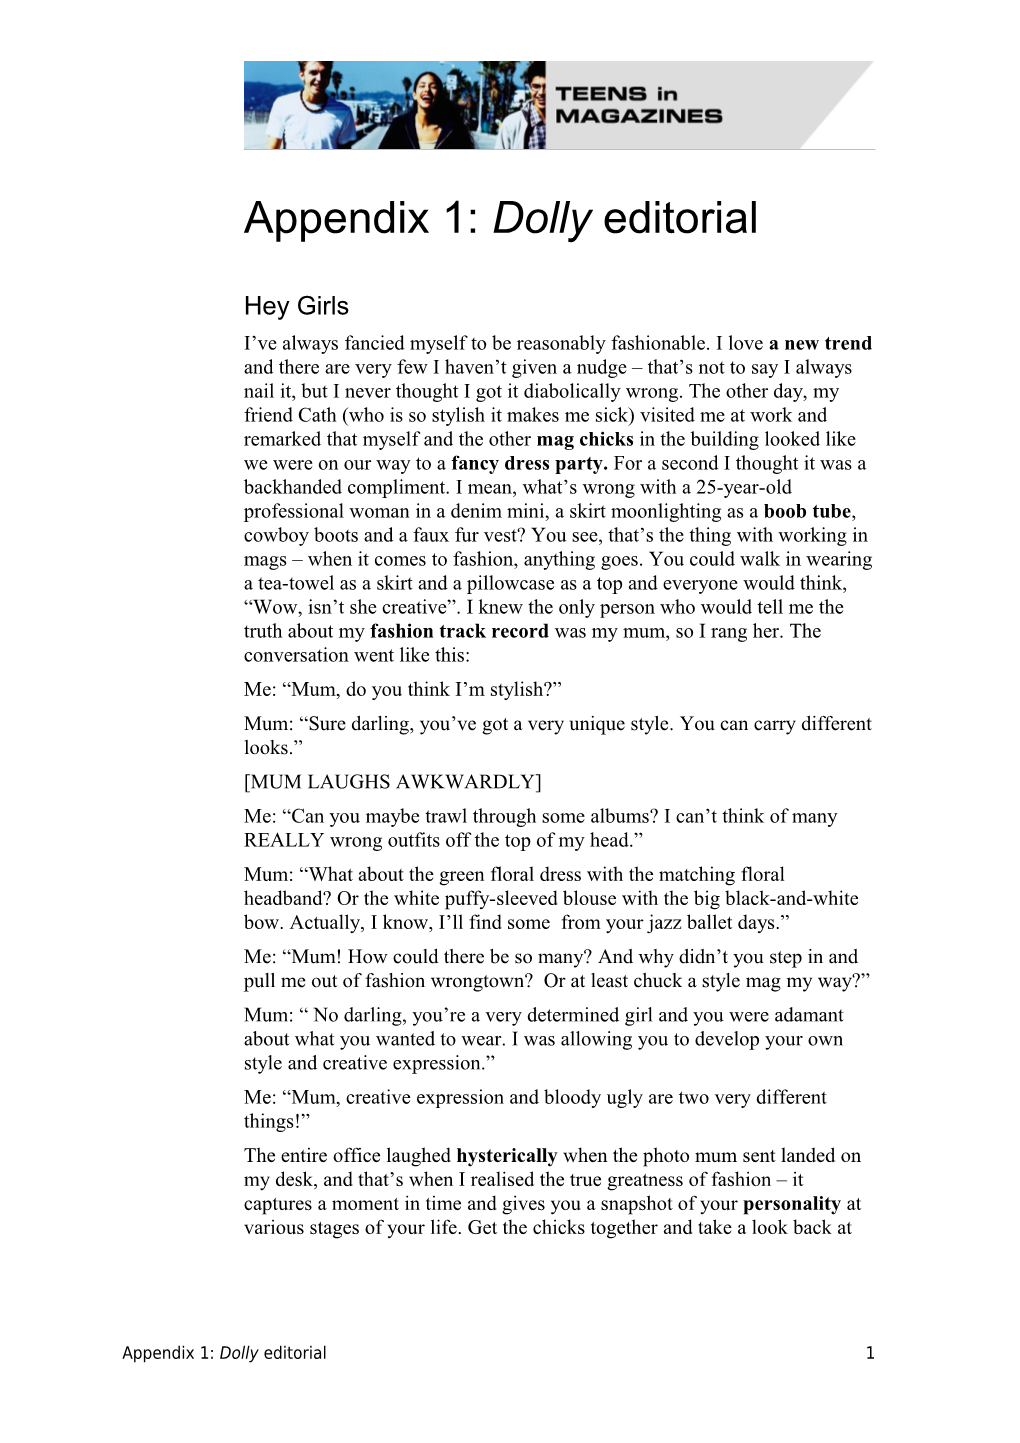 Appendix 1: Dolly Editorial